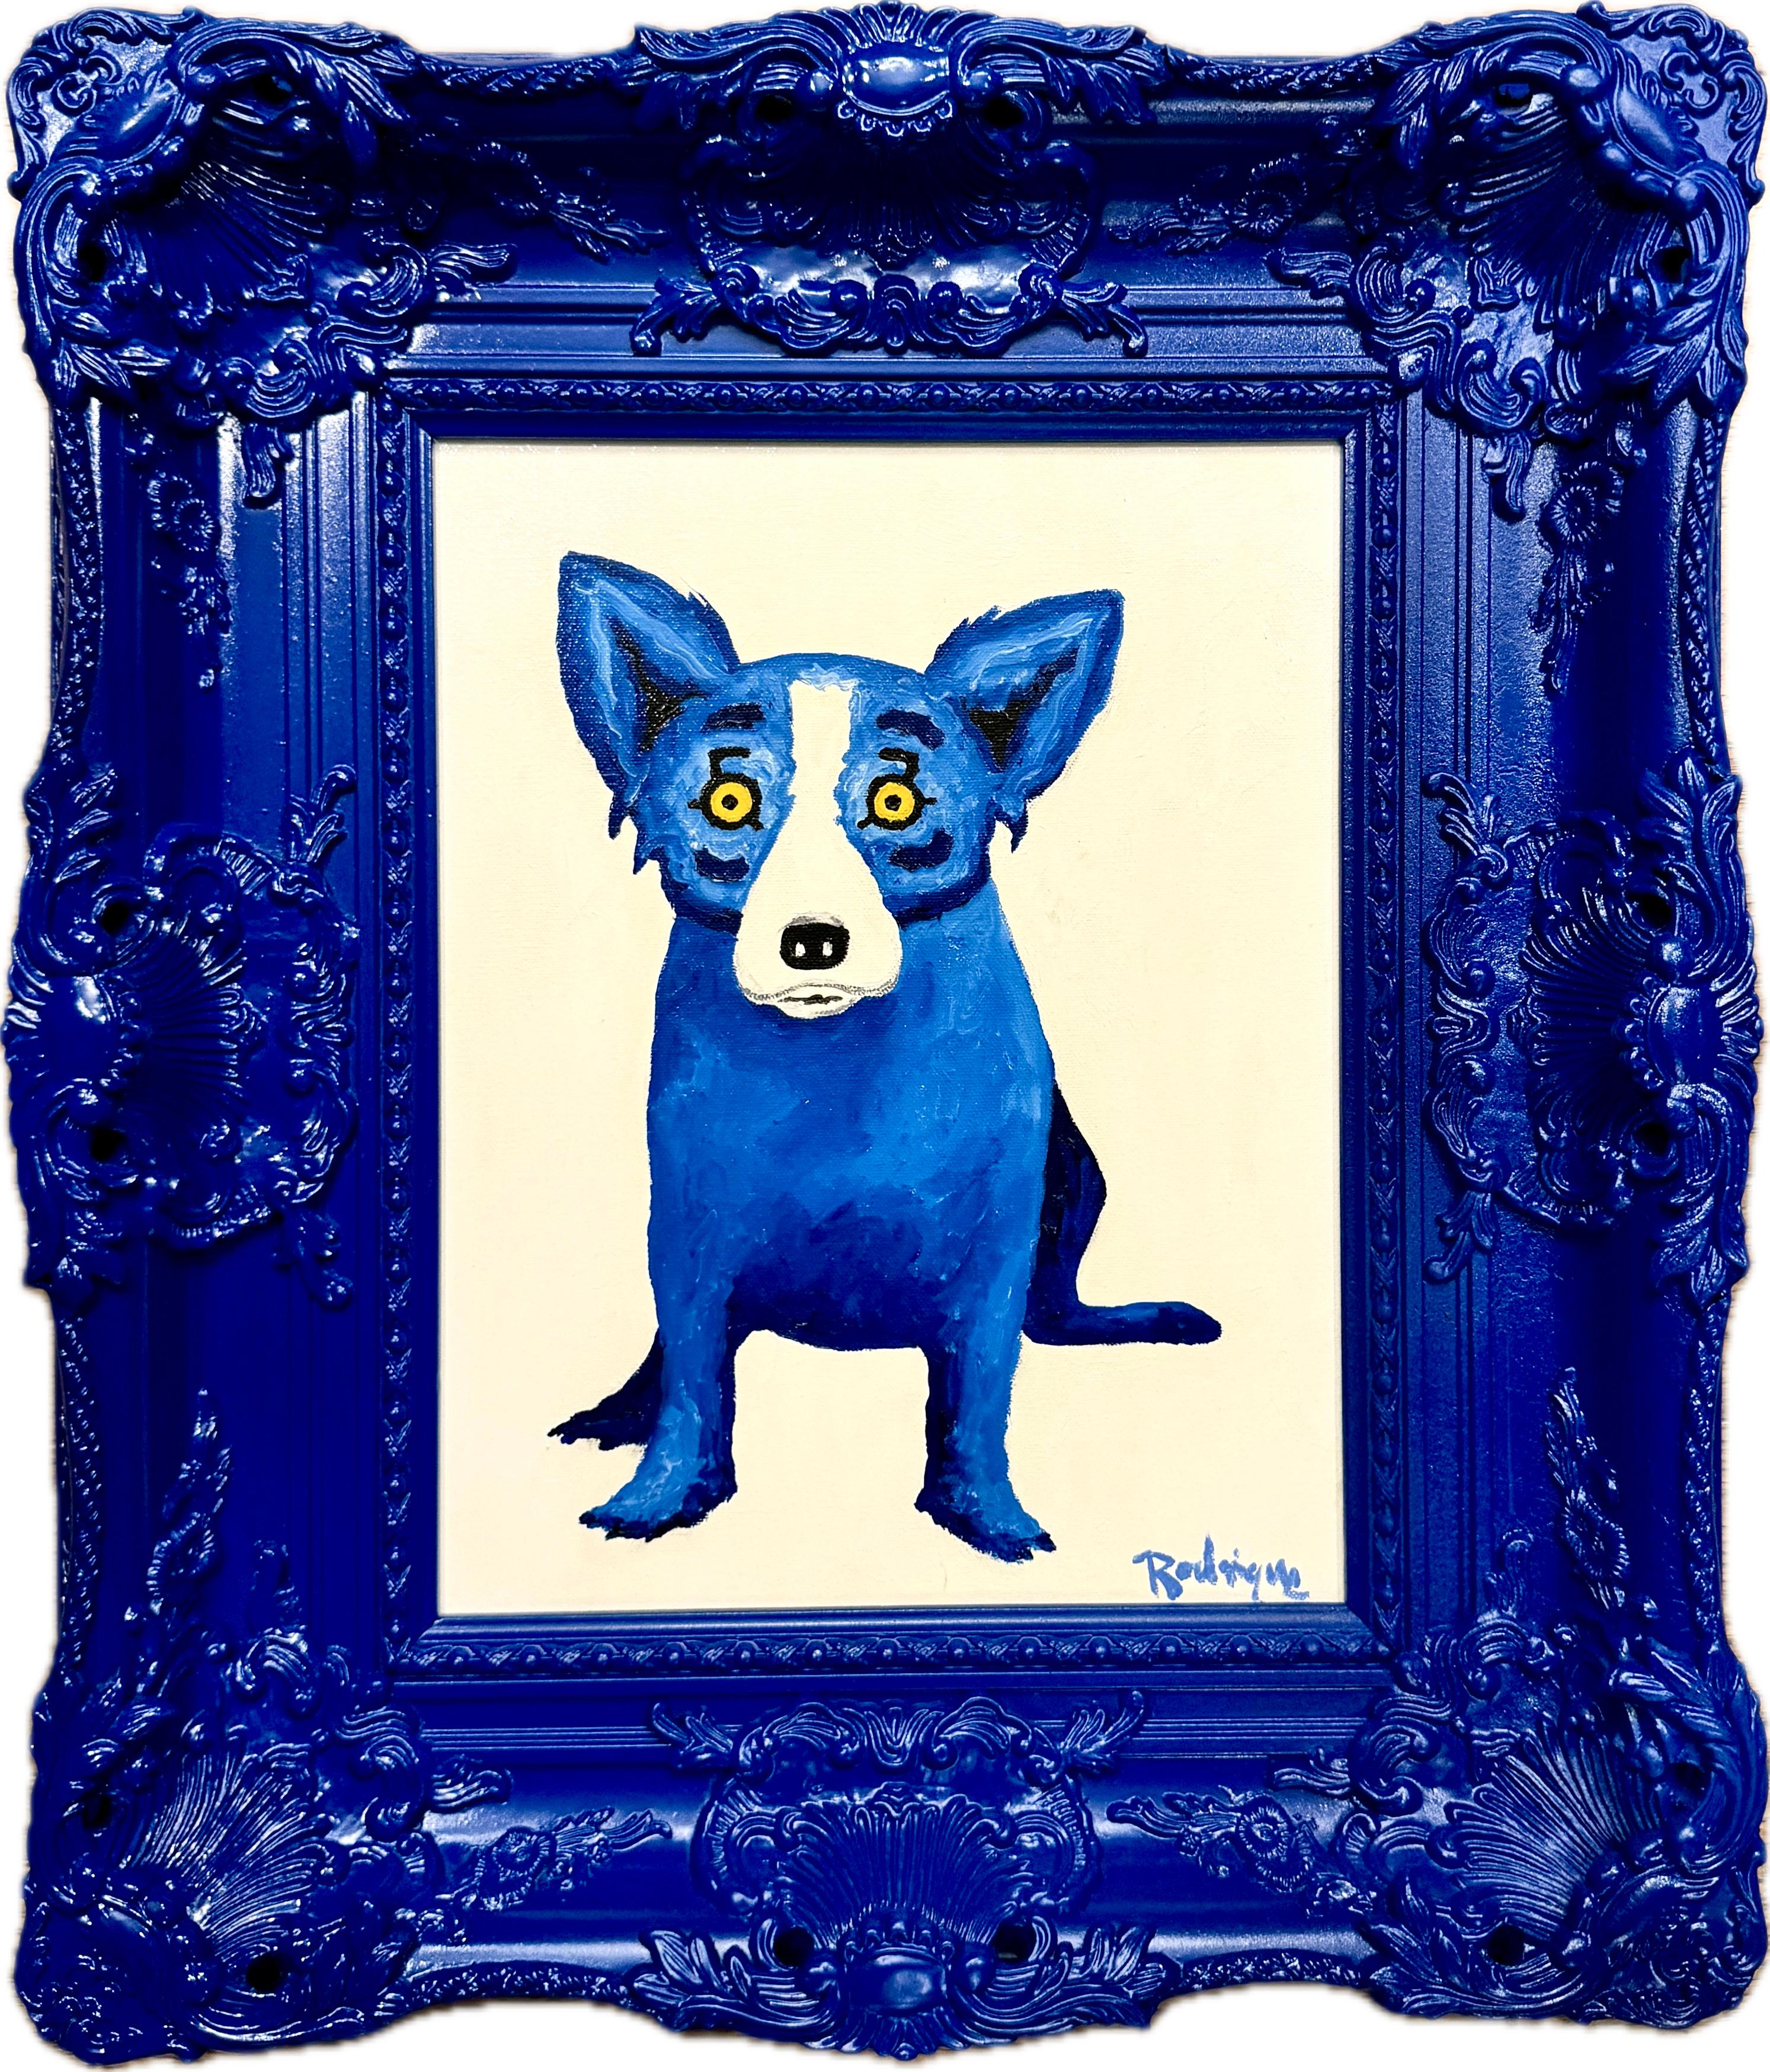 Chien bleu - Painting de George Rodrigue